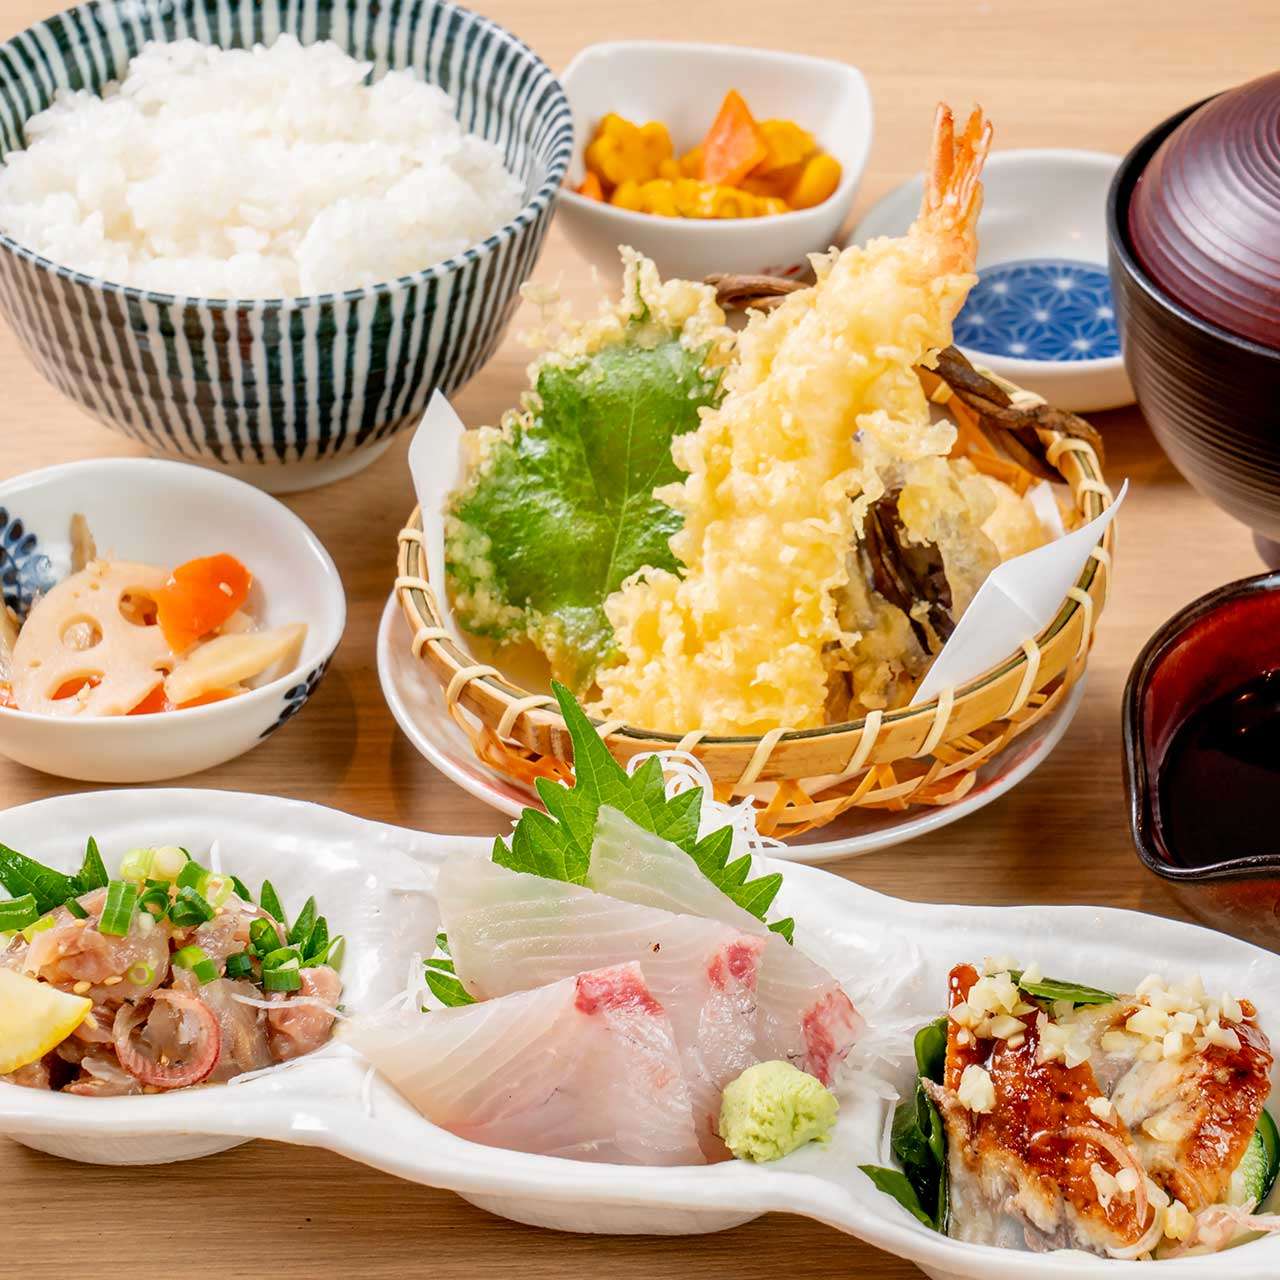 夏の海鮮3種盛りと天ぷら御膳